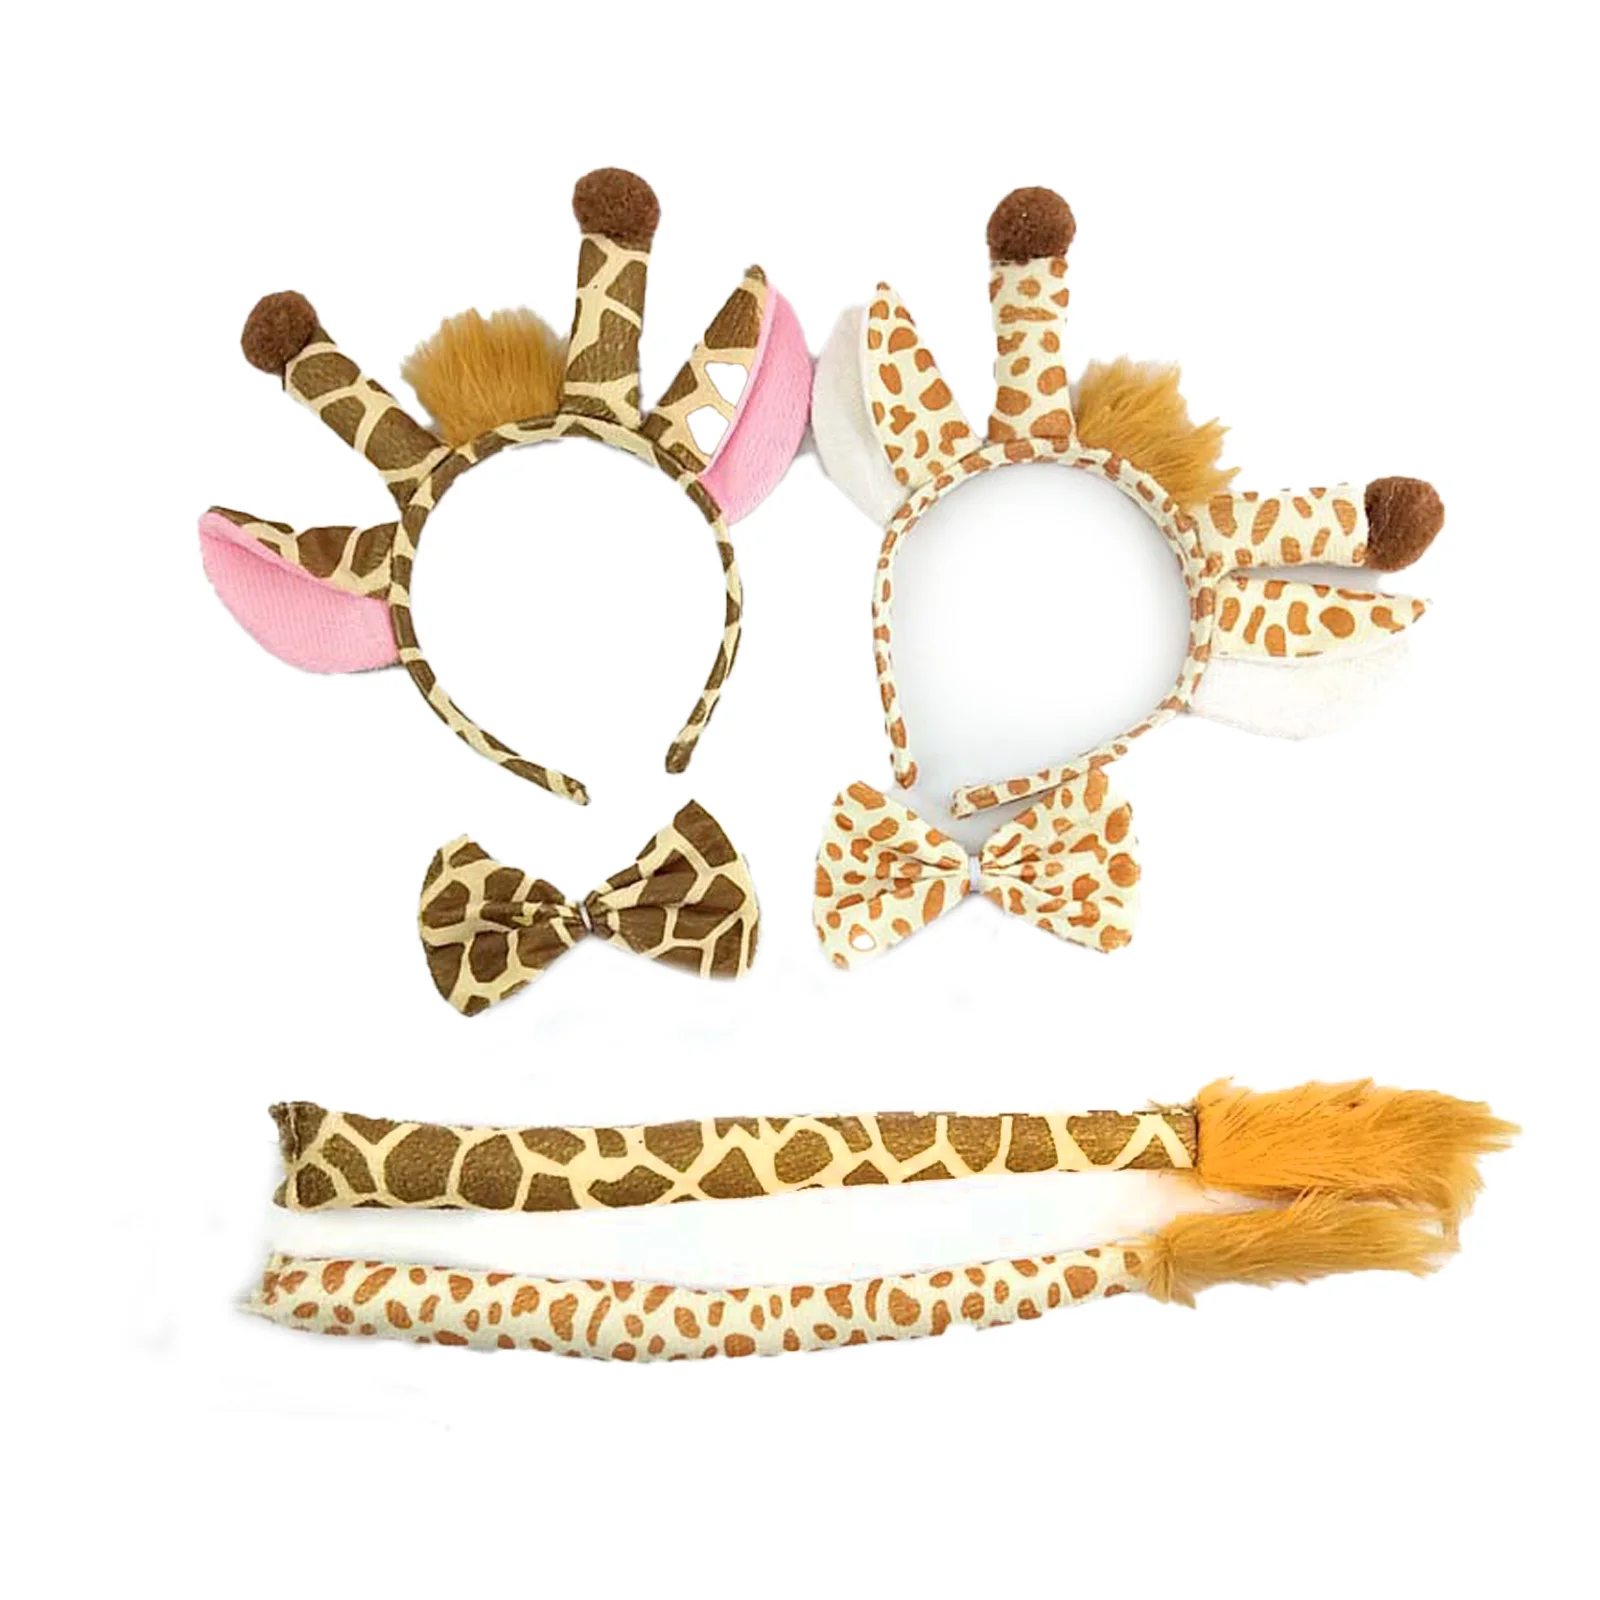 

Косплей-костюм жирафа для детей, комплект с юбкой-пачкой и бантом на уши, Желтый/хаки, для Хэллоуина, карнавала, дня рождения